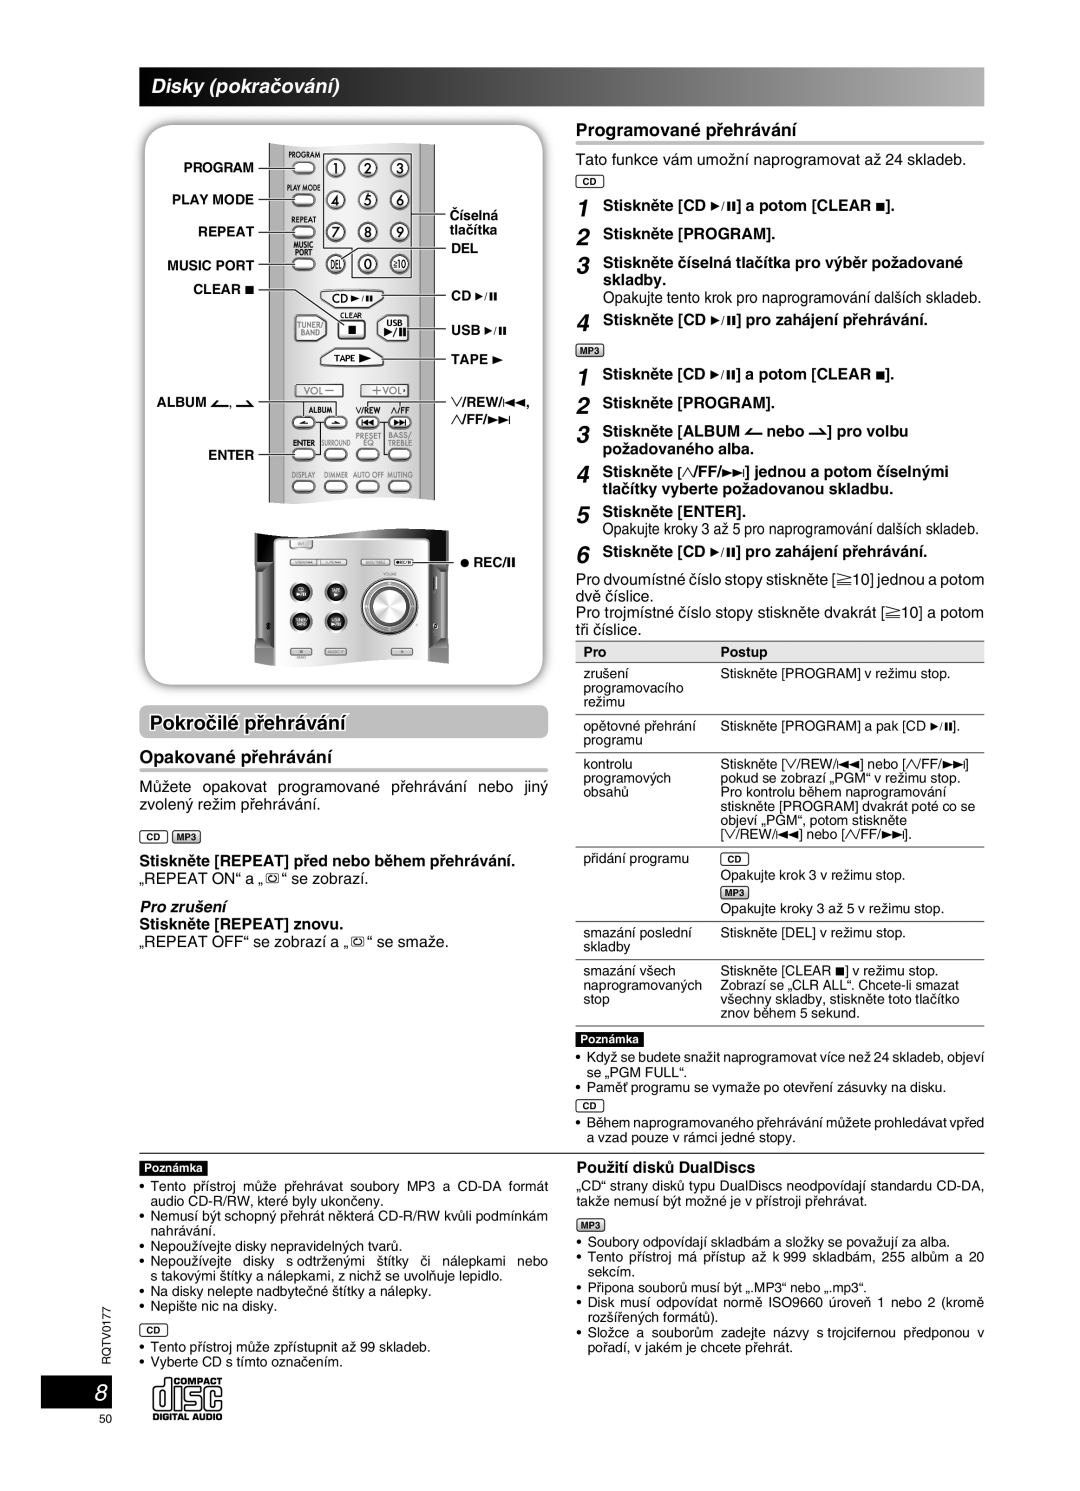 Panasonic SC-PM45 manual Disky pokraãování, Pokroãilé pﬁehrávání, Pro zru‰ení 